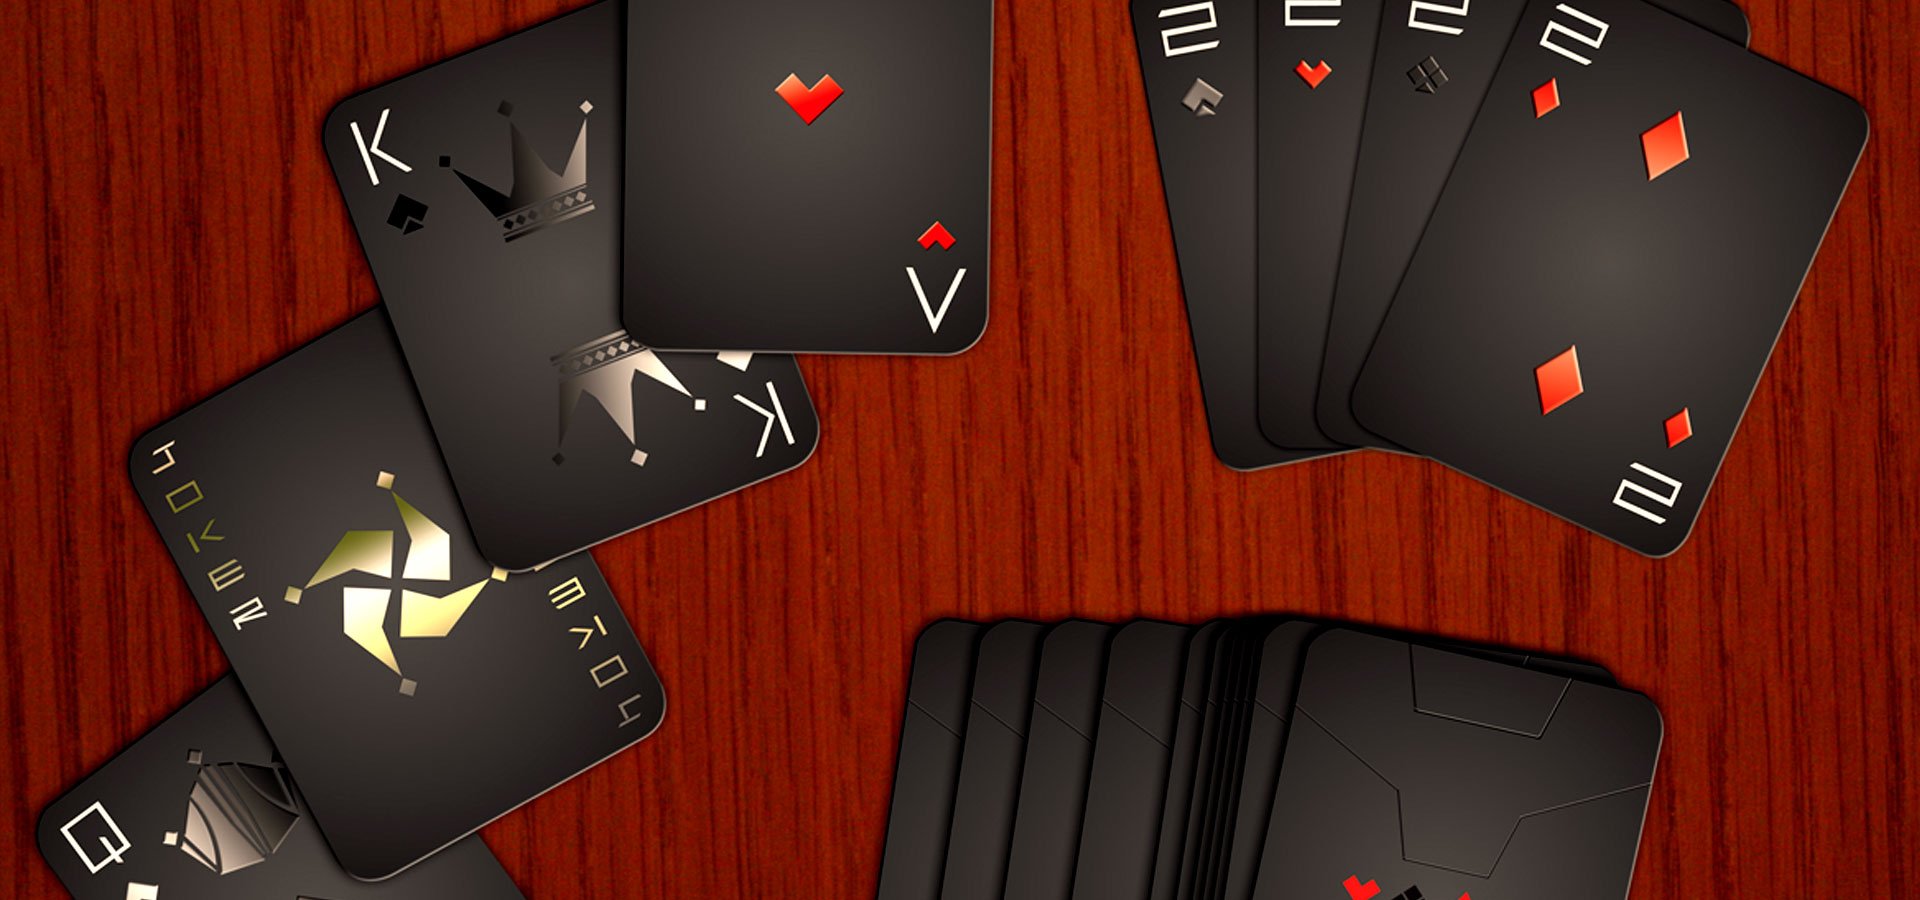 22+ Playing Card Designs  Free & Premium Templates Regarding Playing Card Template Illustrator